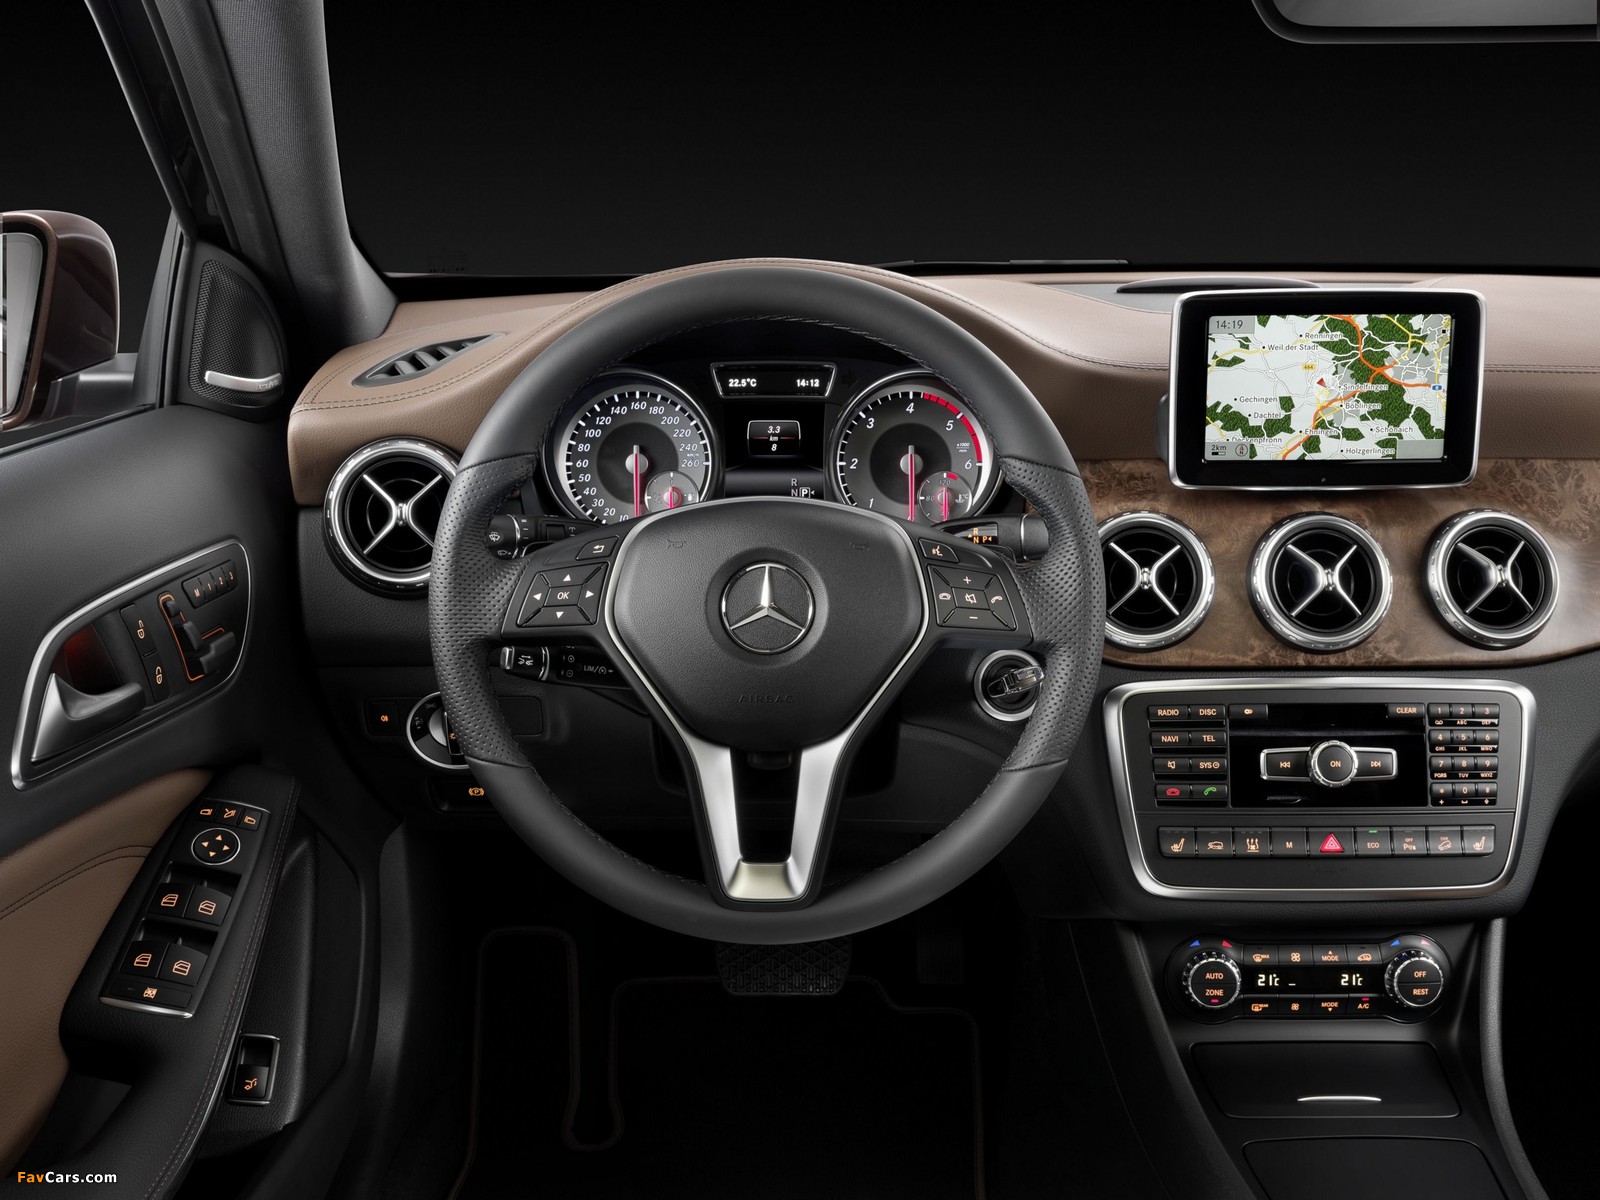 Mercedes-Benz GLA 220 CDI 4MATIC (X156) 2014 images (1600 x 1200)